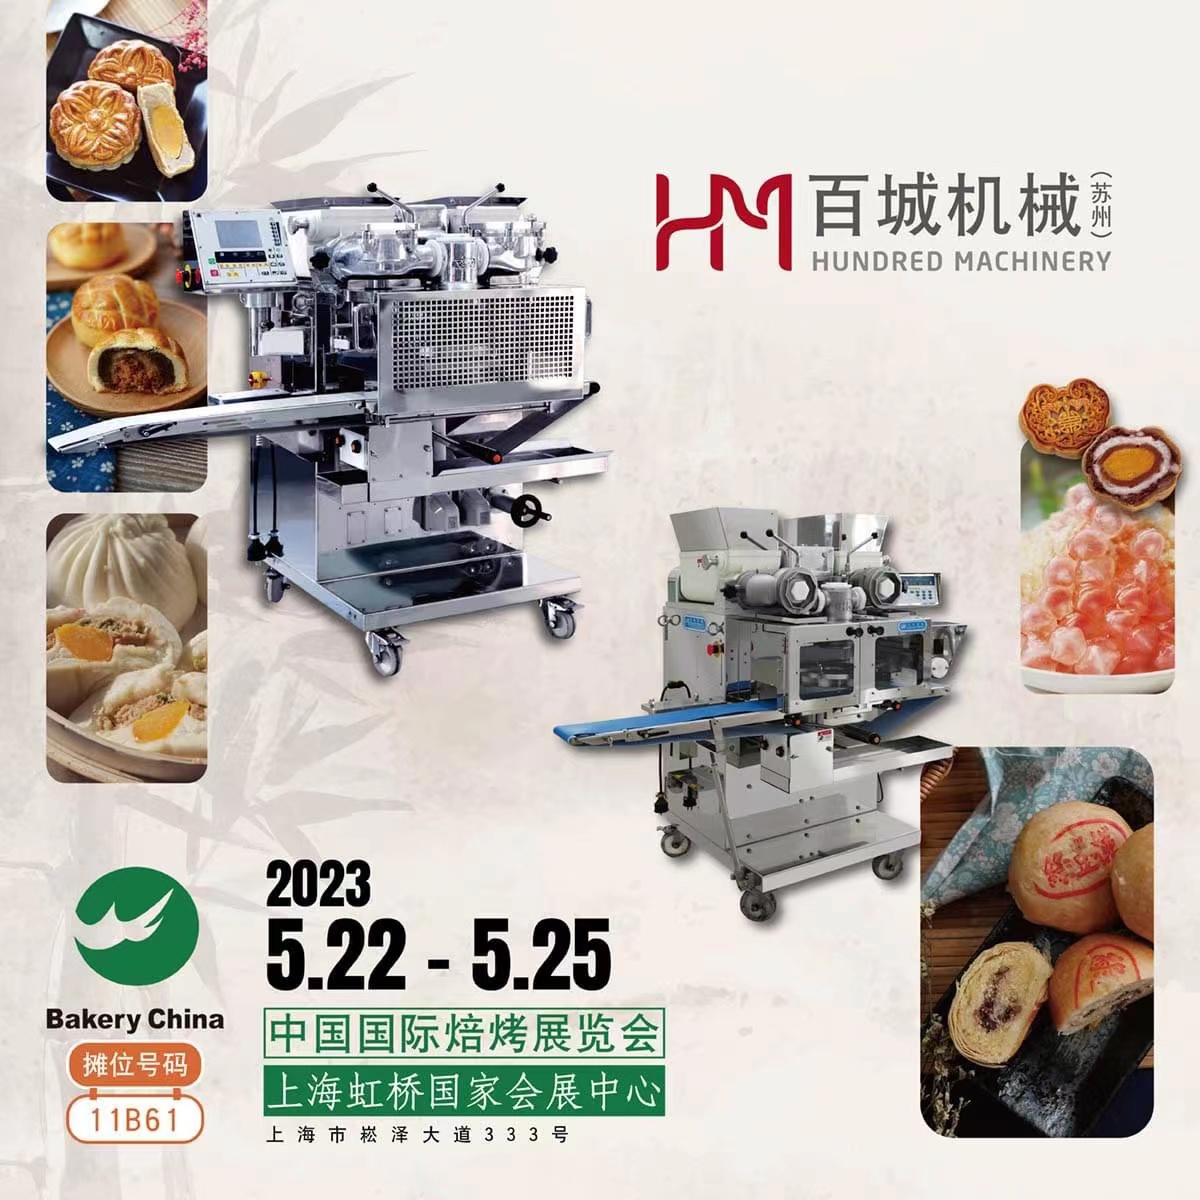 國際展覽 | 2023 中國國際焙烤展覽會